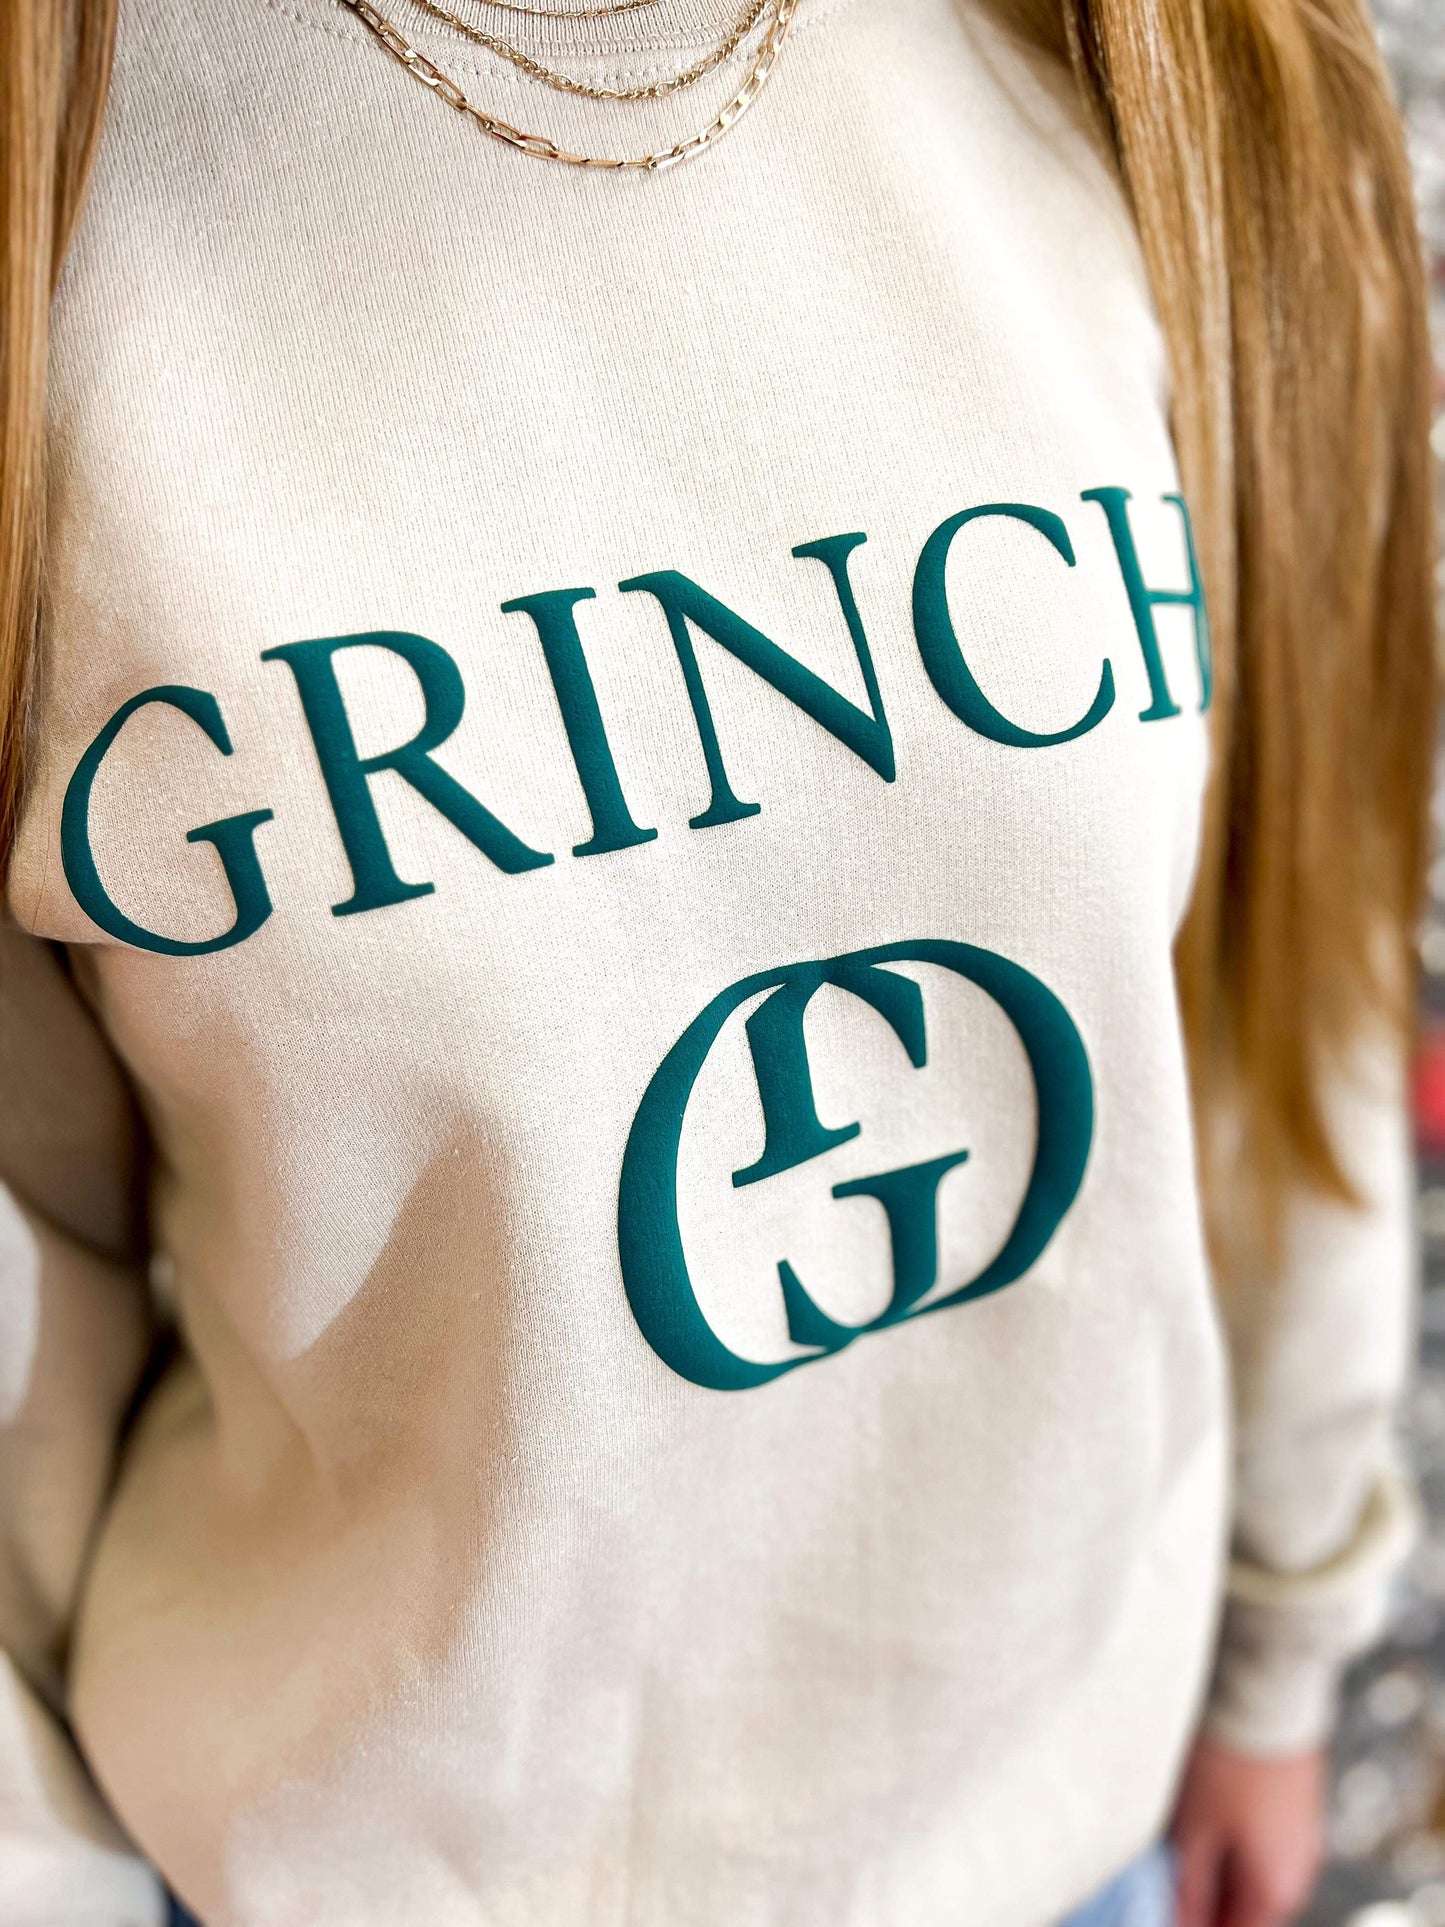 Grinchi Sweatshirt